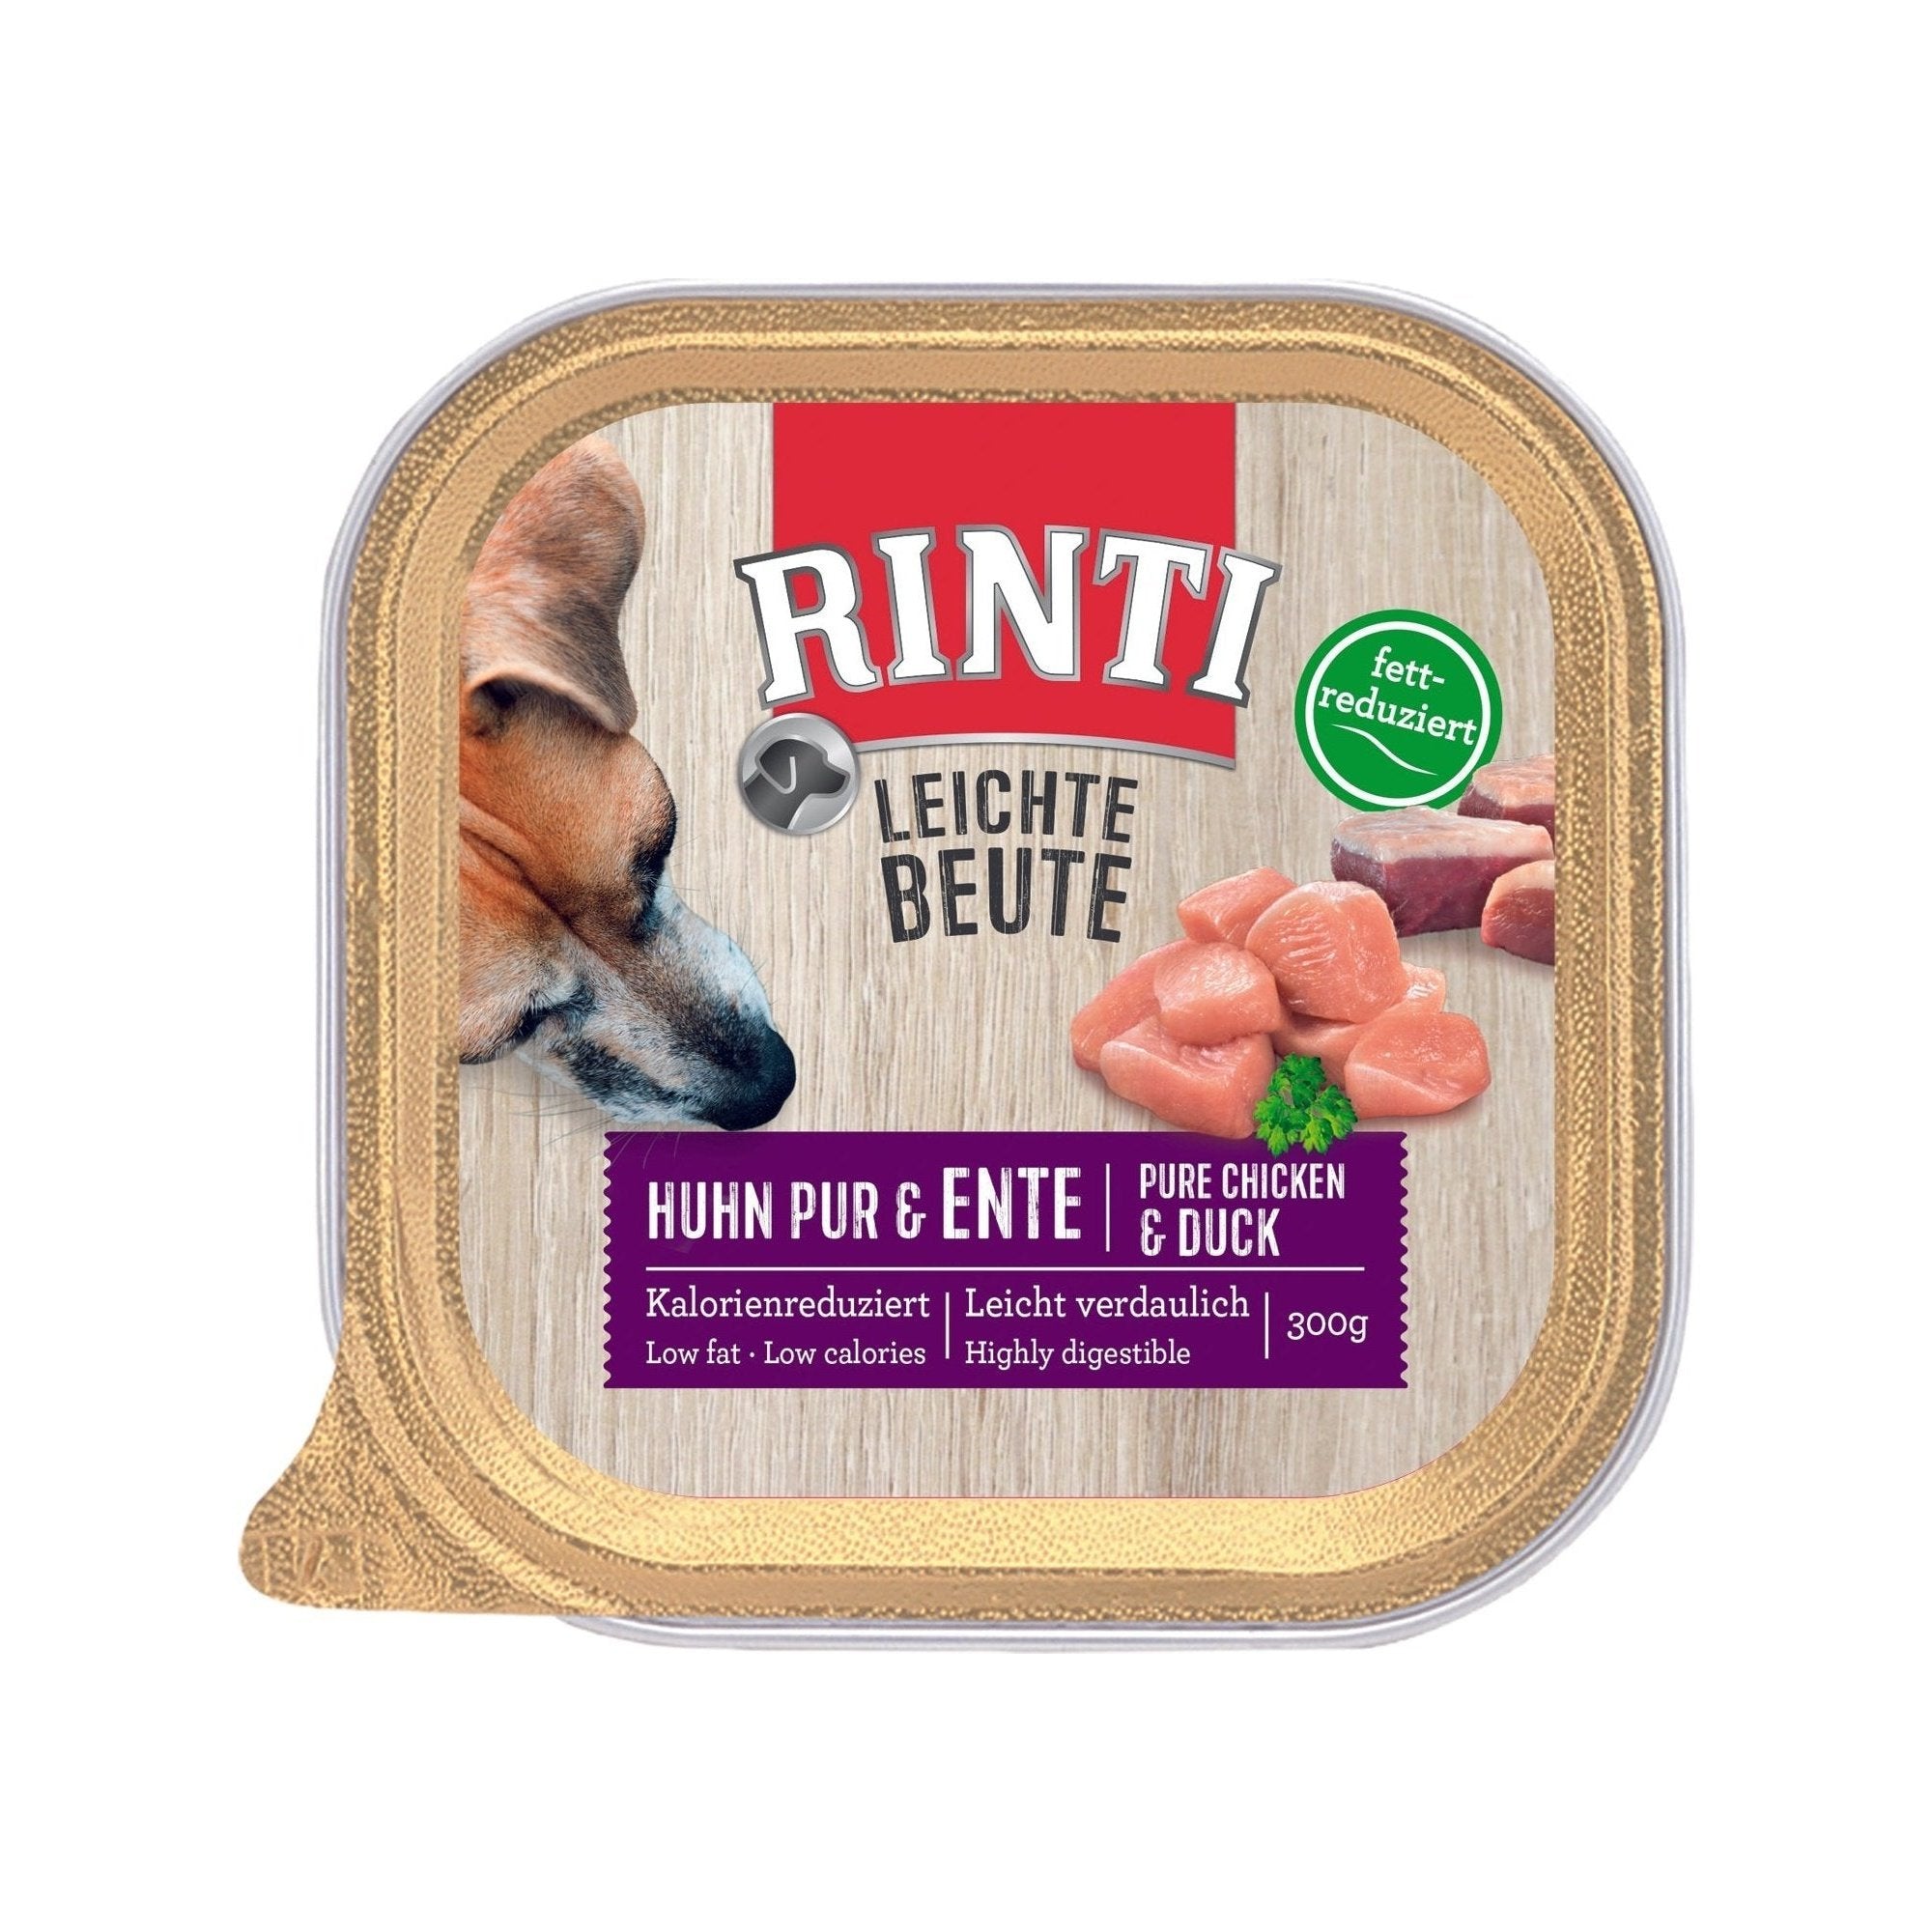 Rinti Leichte Beute Huhn Pur + Ente - zoo.de